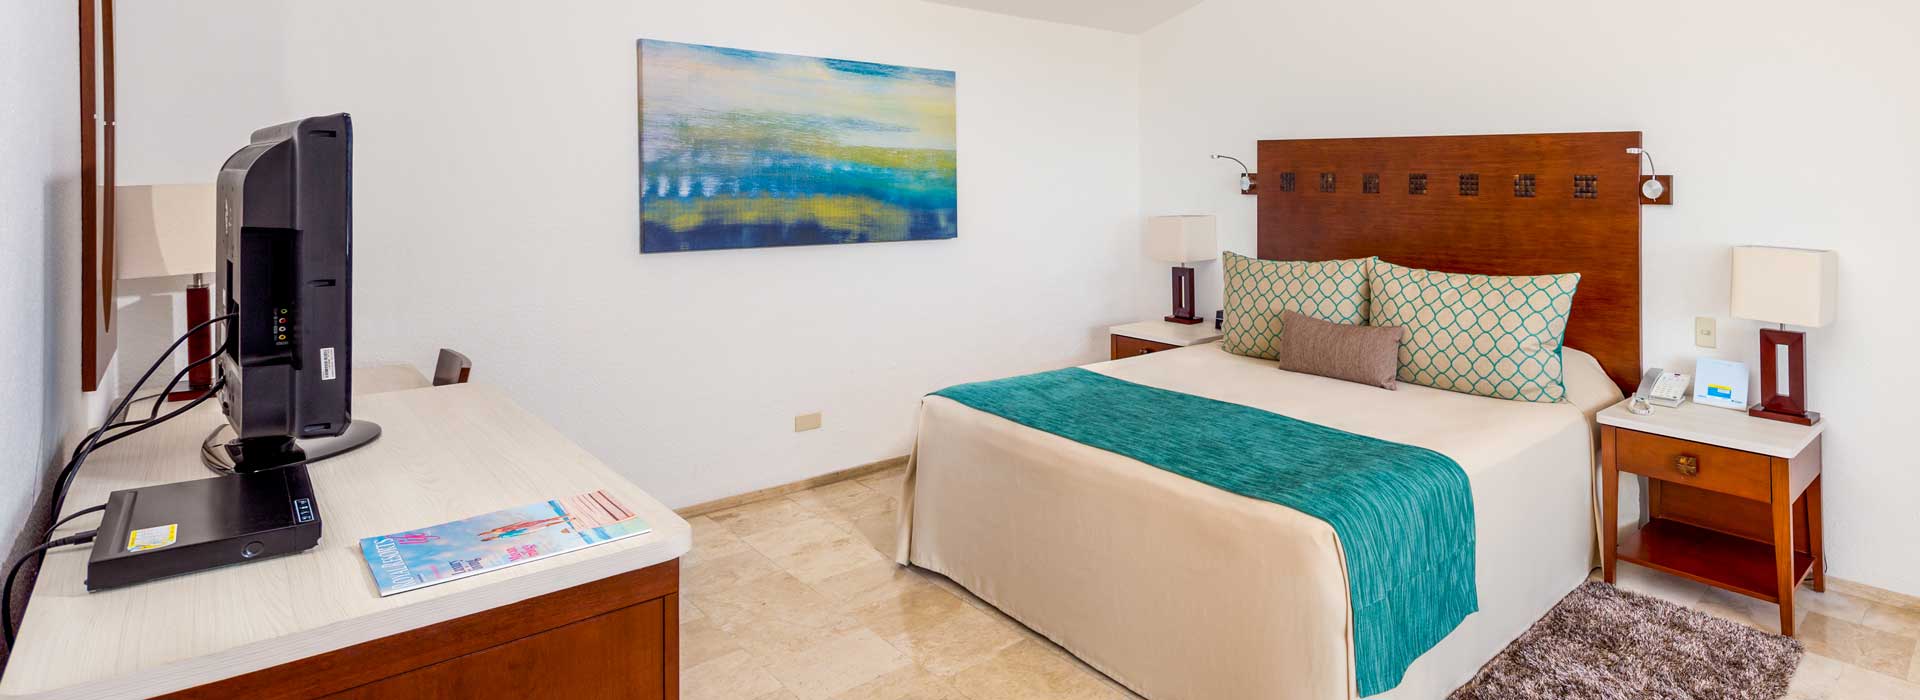 habitación familiar hotel en Cancún